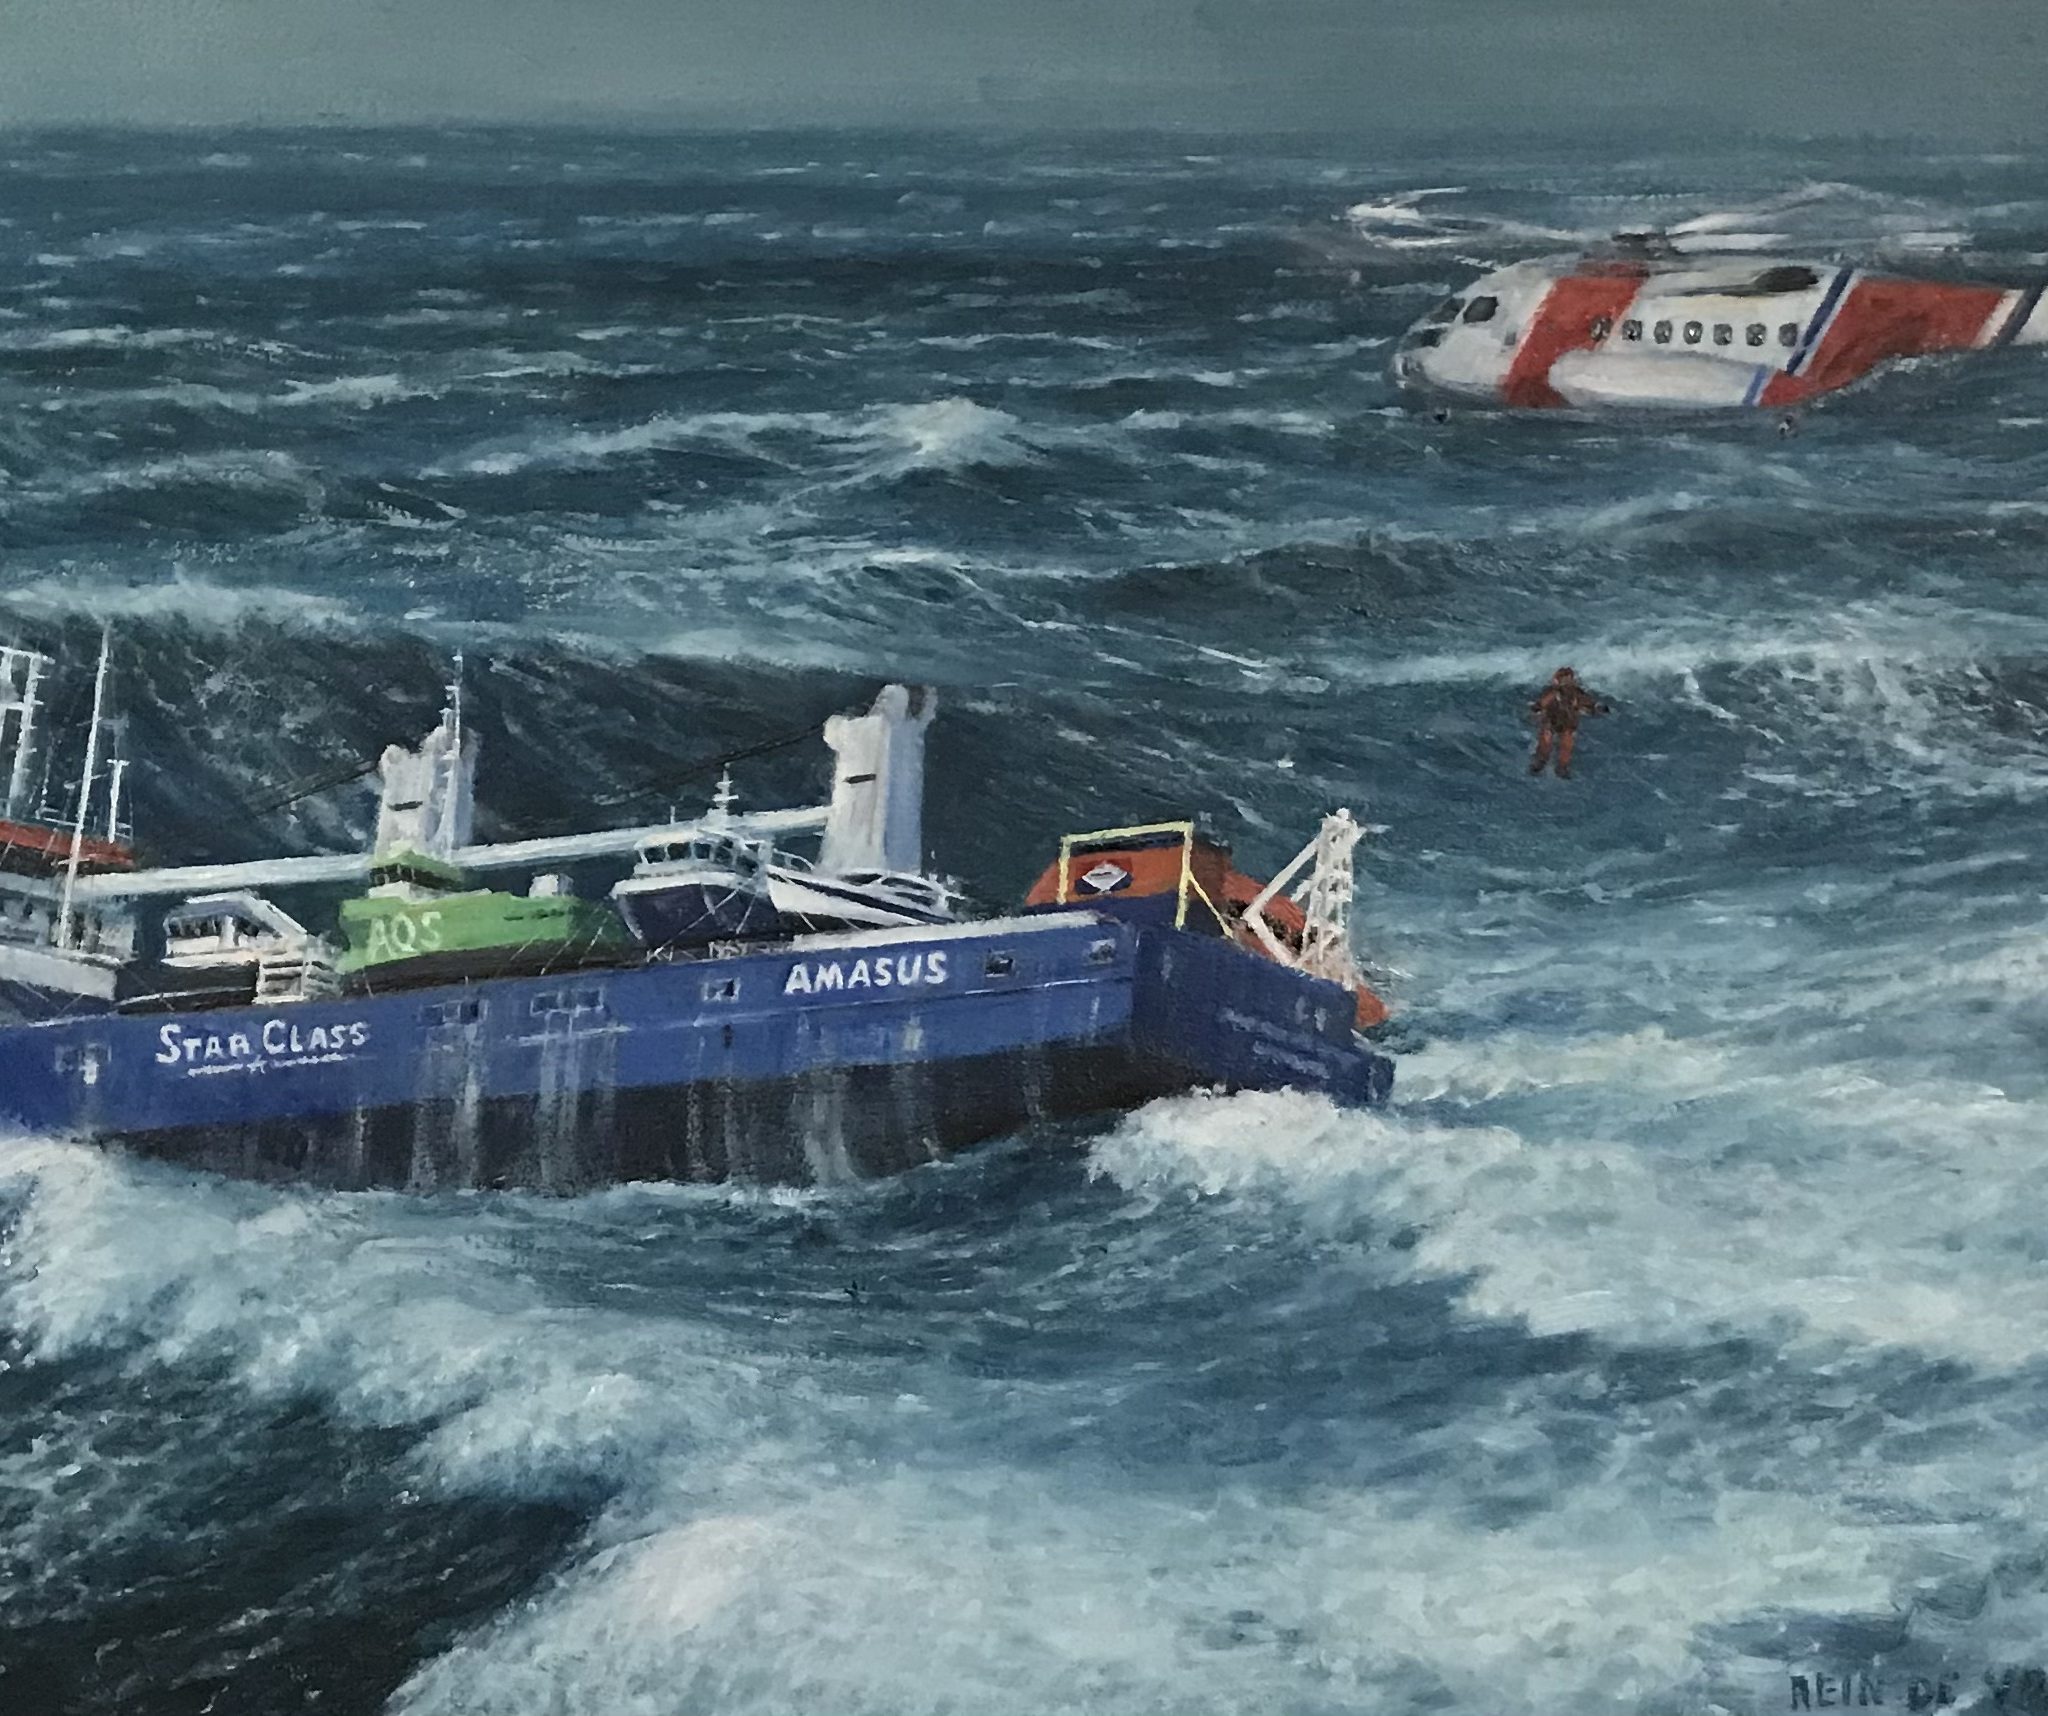 Inzending van zeeschilder Rein de Vries. De Eemslift Hendrika kwam in april dit jaar in de problemen voor de Noorse kust. (Schilderij gemaakt door De Vries)